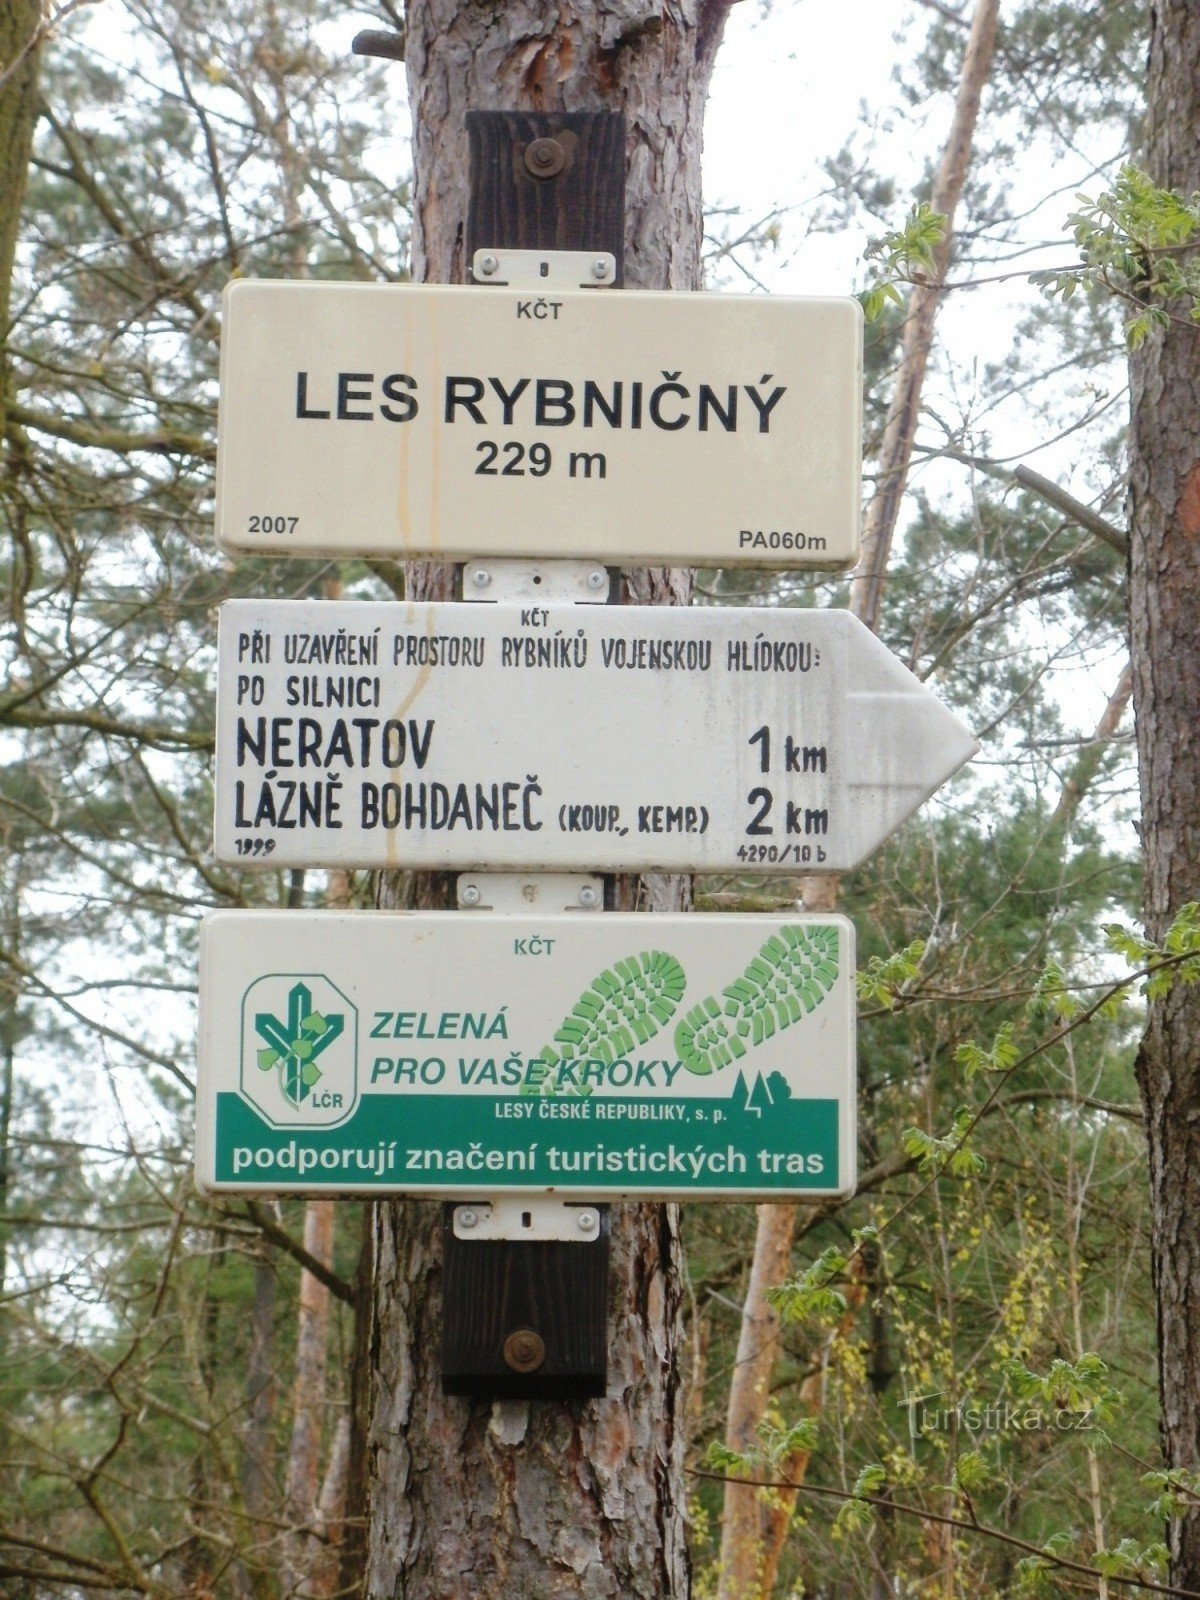 Encrucijada turística del bosque de Rybničný